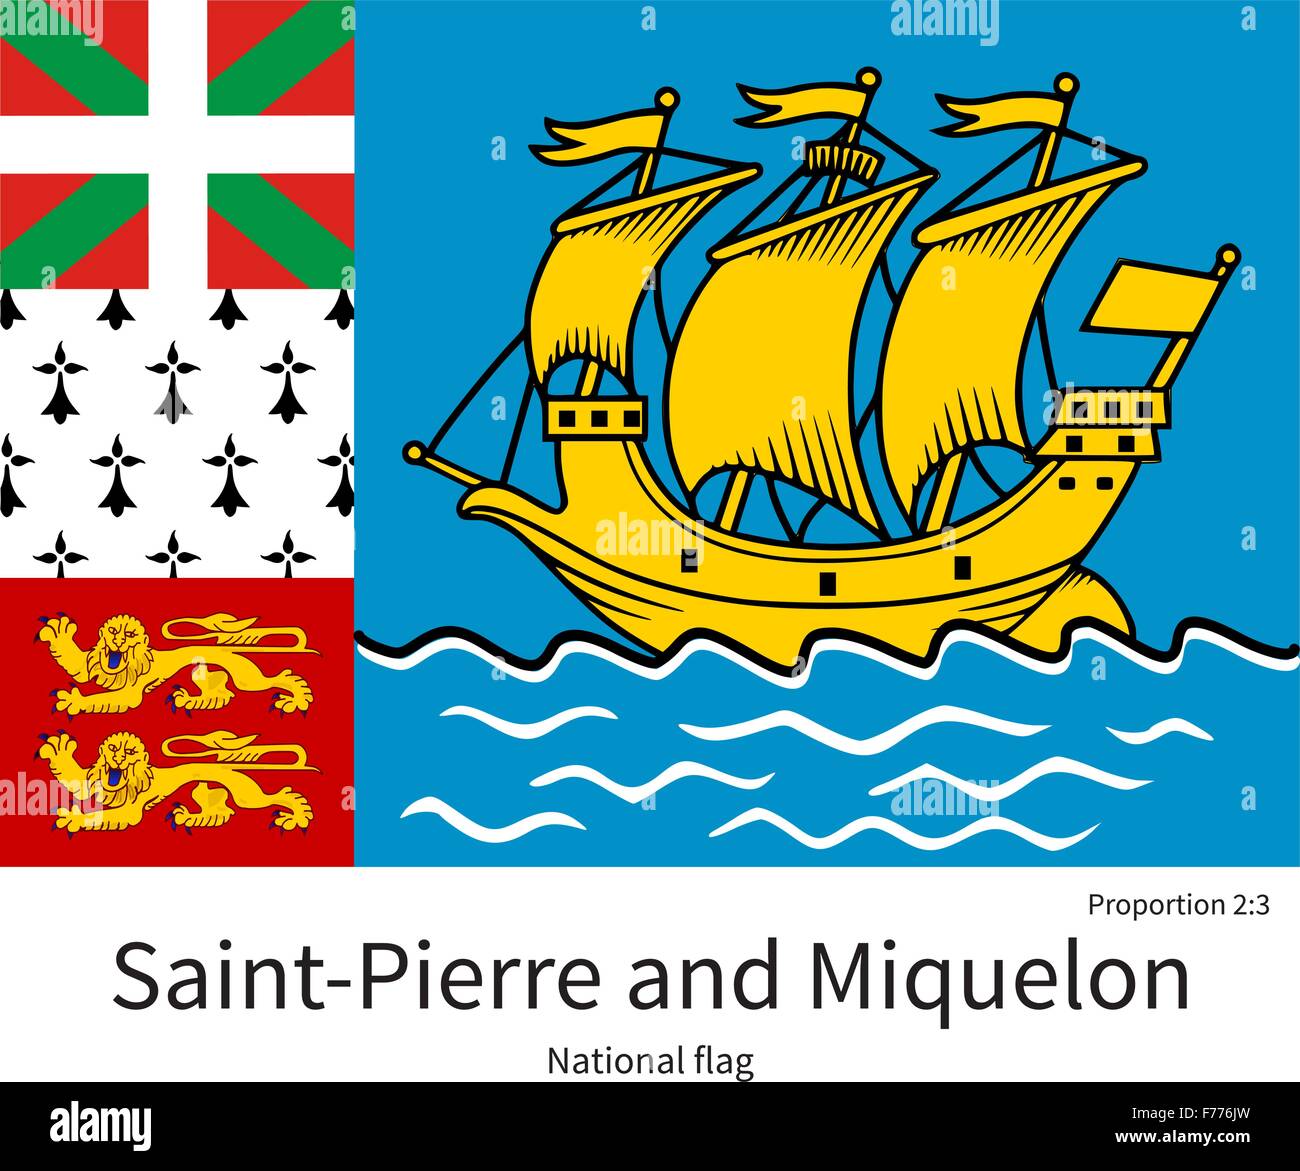 Nationalflagge von Saint-Pierre und Miquelon mit korrekten Proportionen, Element, Farben Stock Vektor